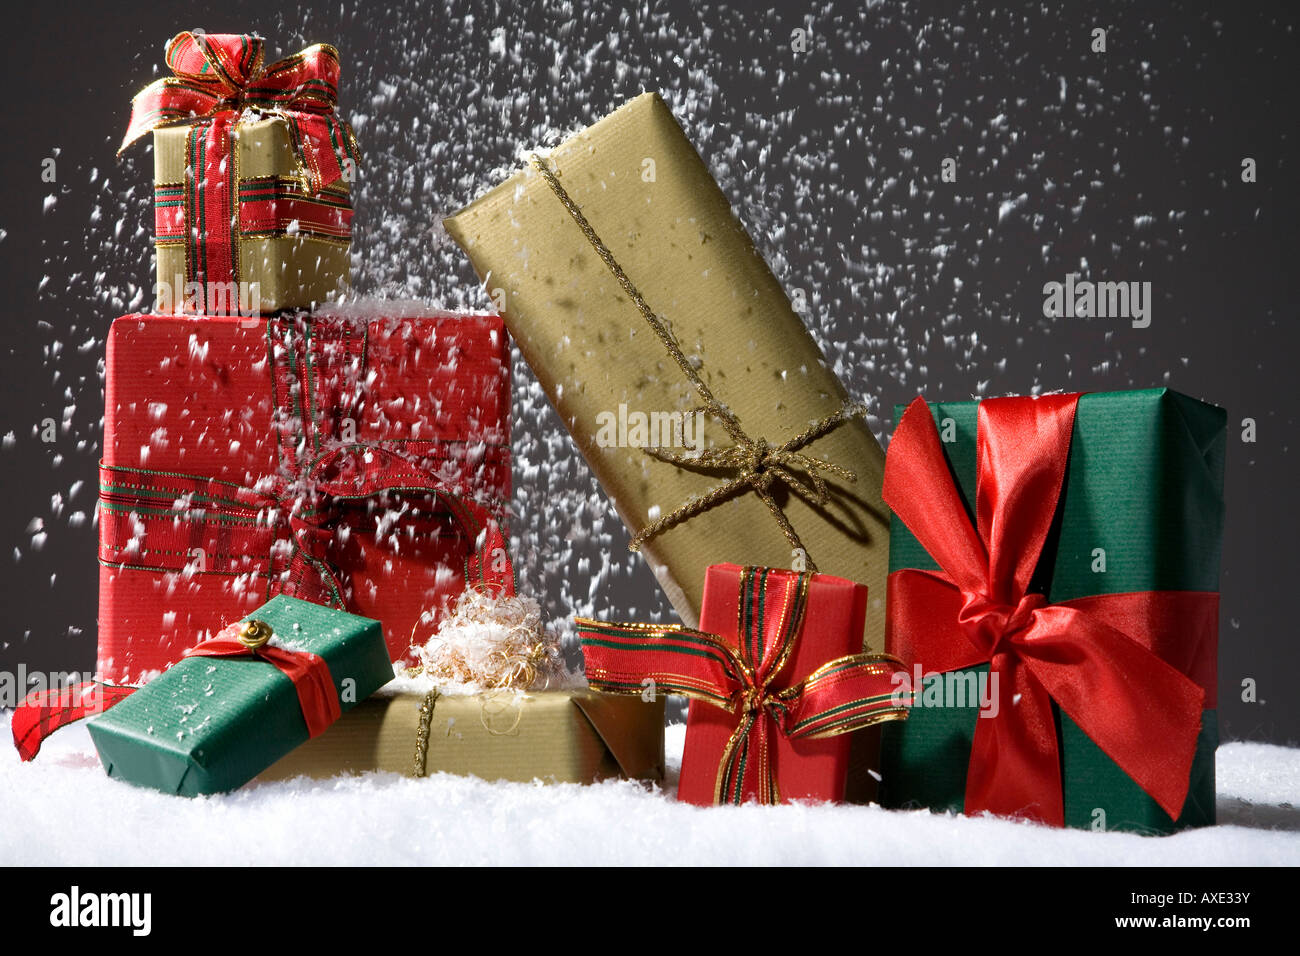 Pacchi Di Natale.Pacchi Di Natale Foto Stock Alamy